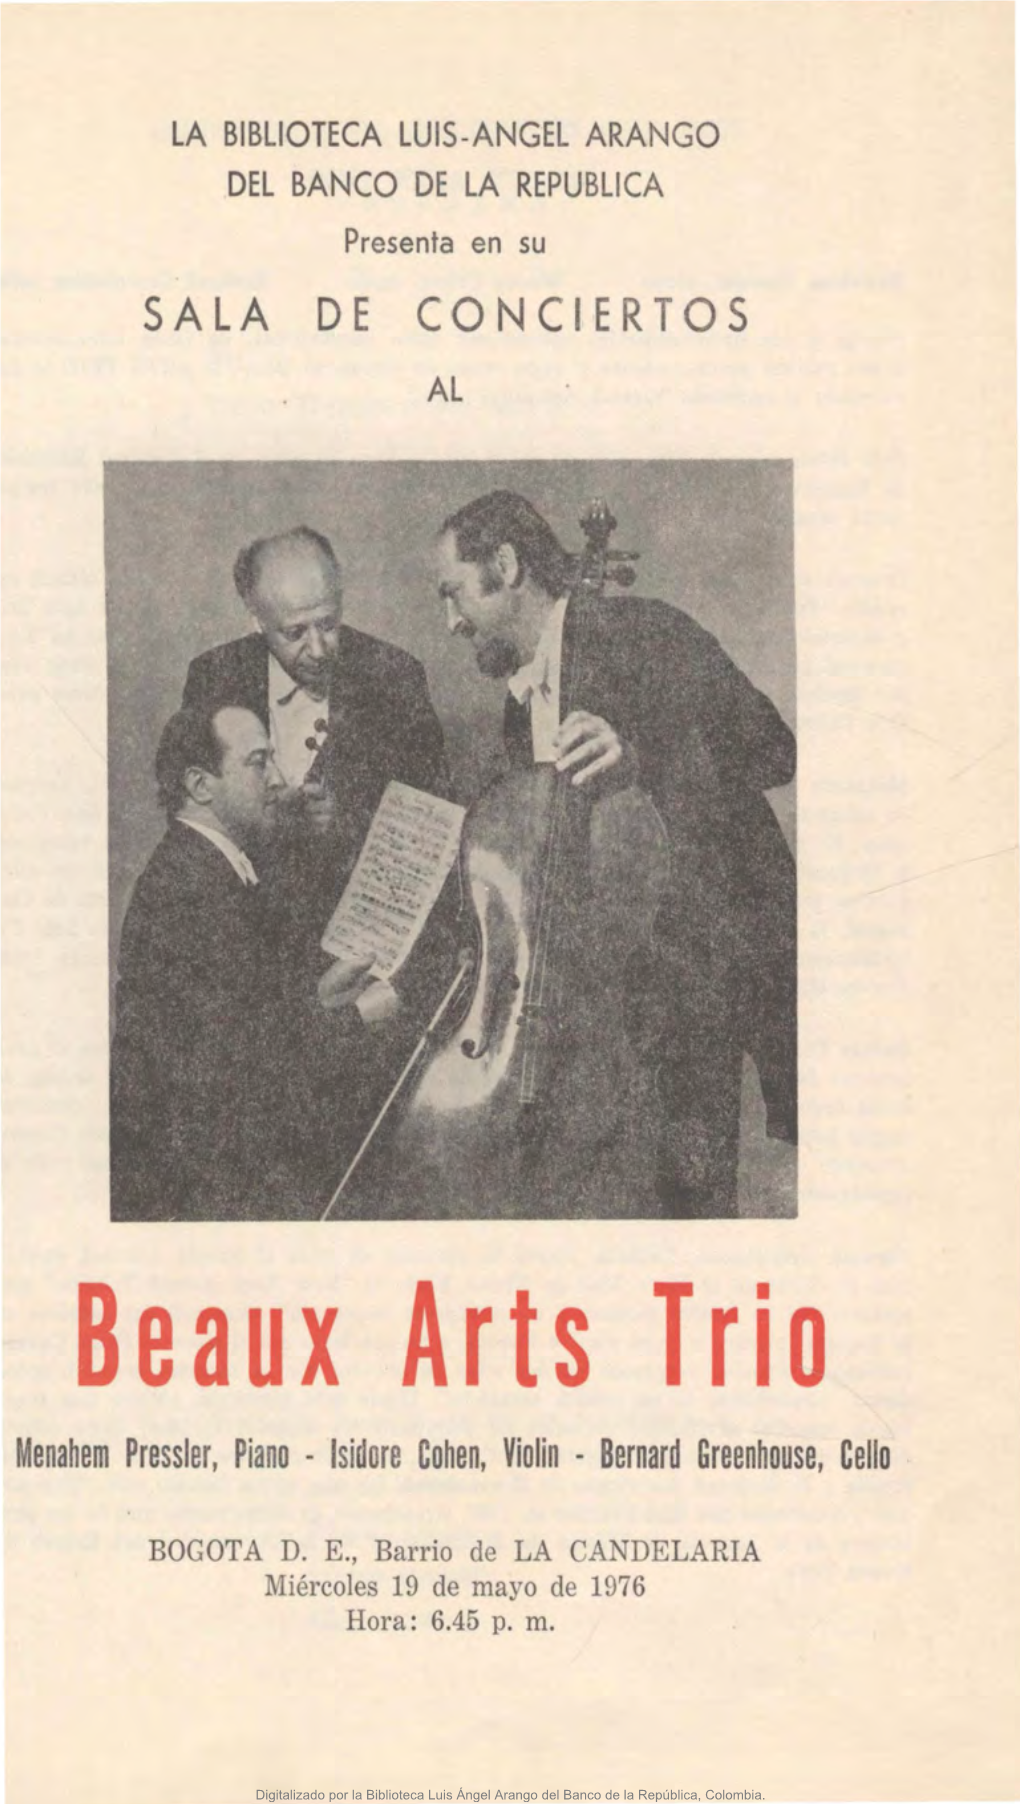 Beaux Arts Trio Menahem Pressler, Piano - Lsidore Cohen, Violin - Bernard Greenhouse, Cello